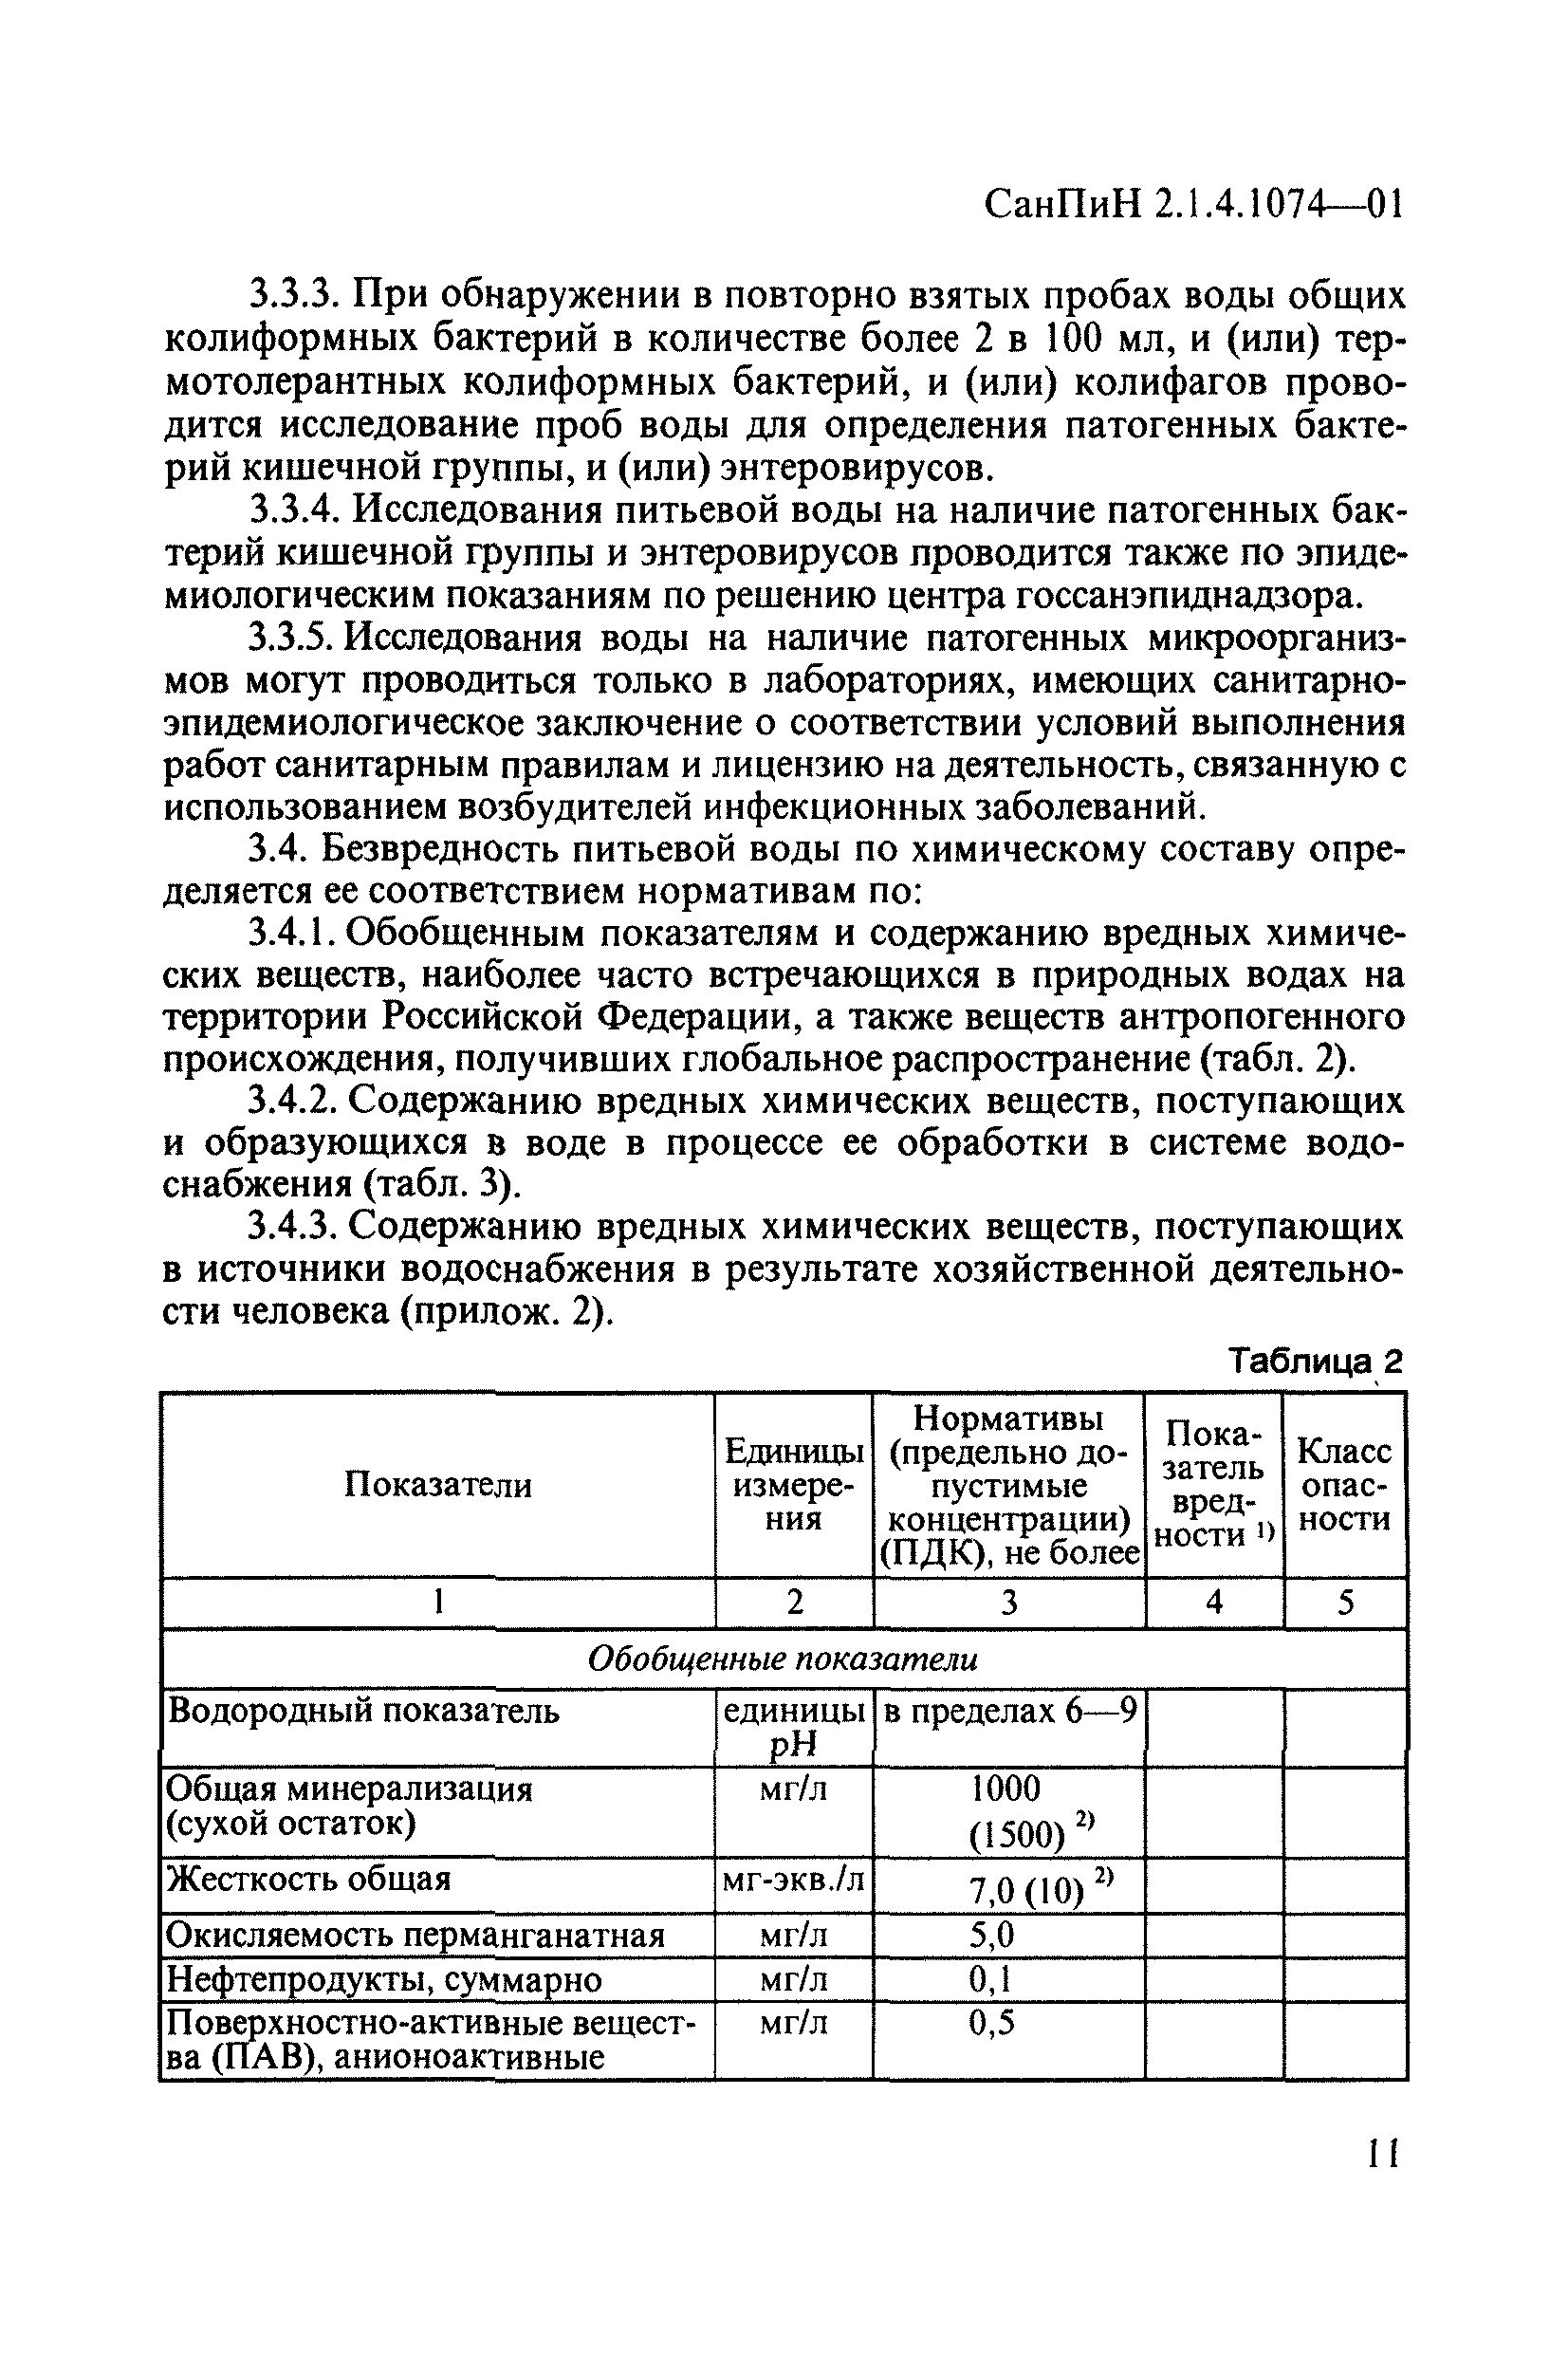 СанПиН 2.1.4.1074-01